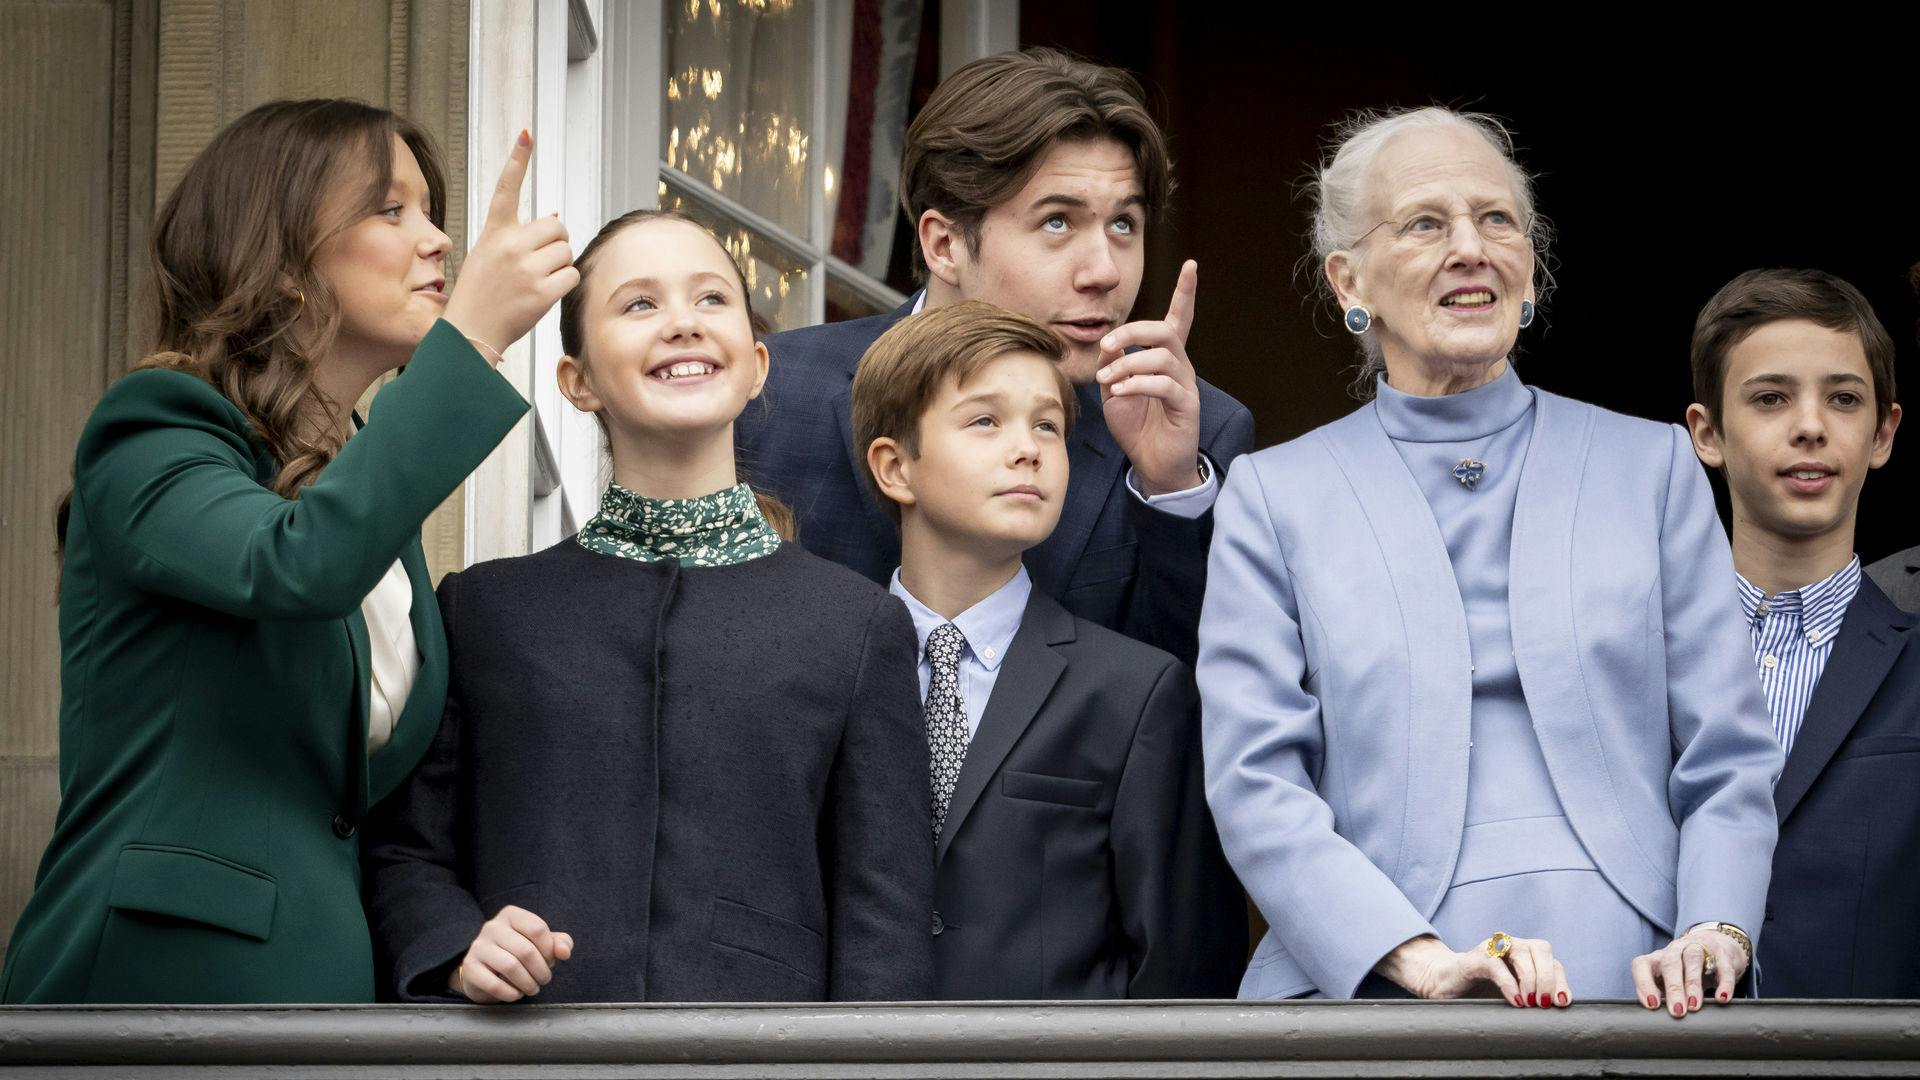 Dronning Margrethe, prinsesse Isabella, prinsesse Josephine, prins Vincent, prins Christian og greve Henrik i forbindelse med at dronningen fejrer sin 83 års fødselsdag på Amalienborg Slot i København, søndag den 16. april 2023.
